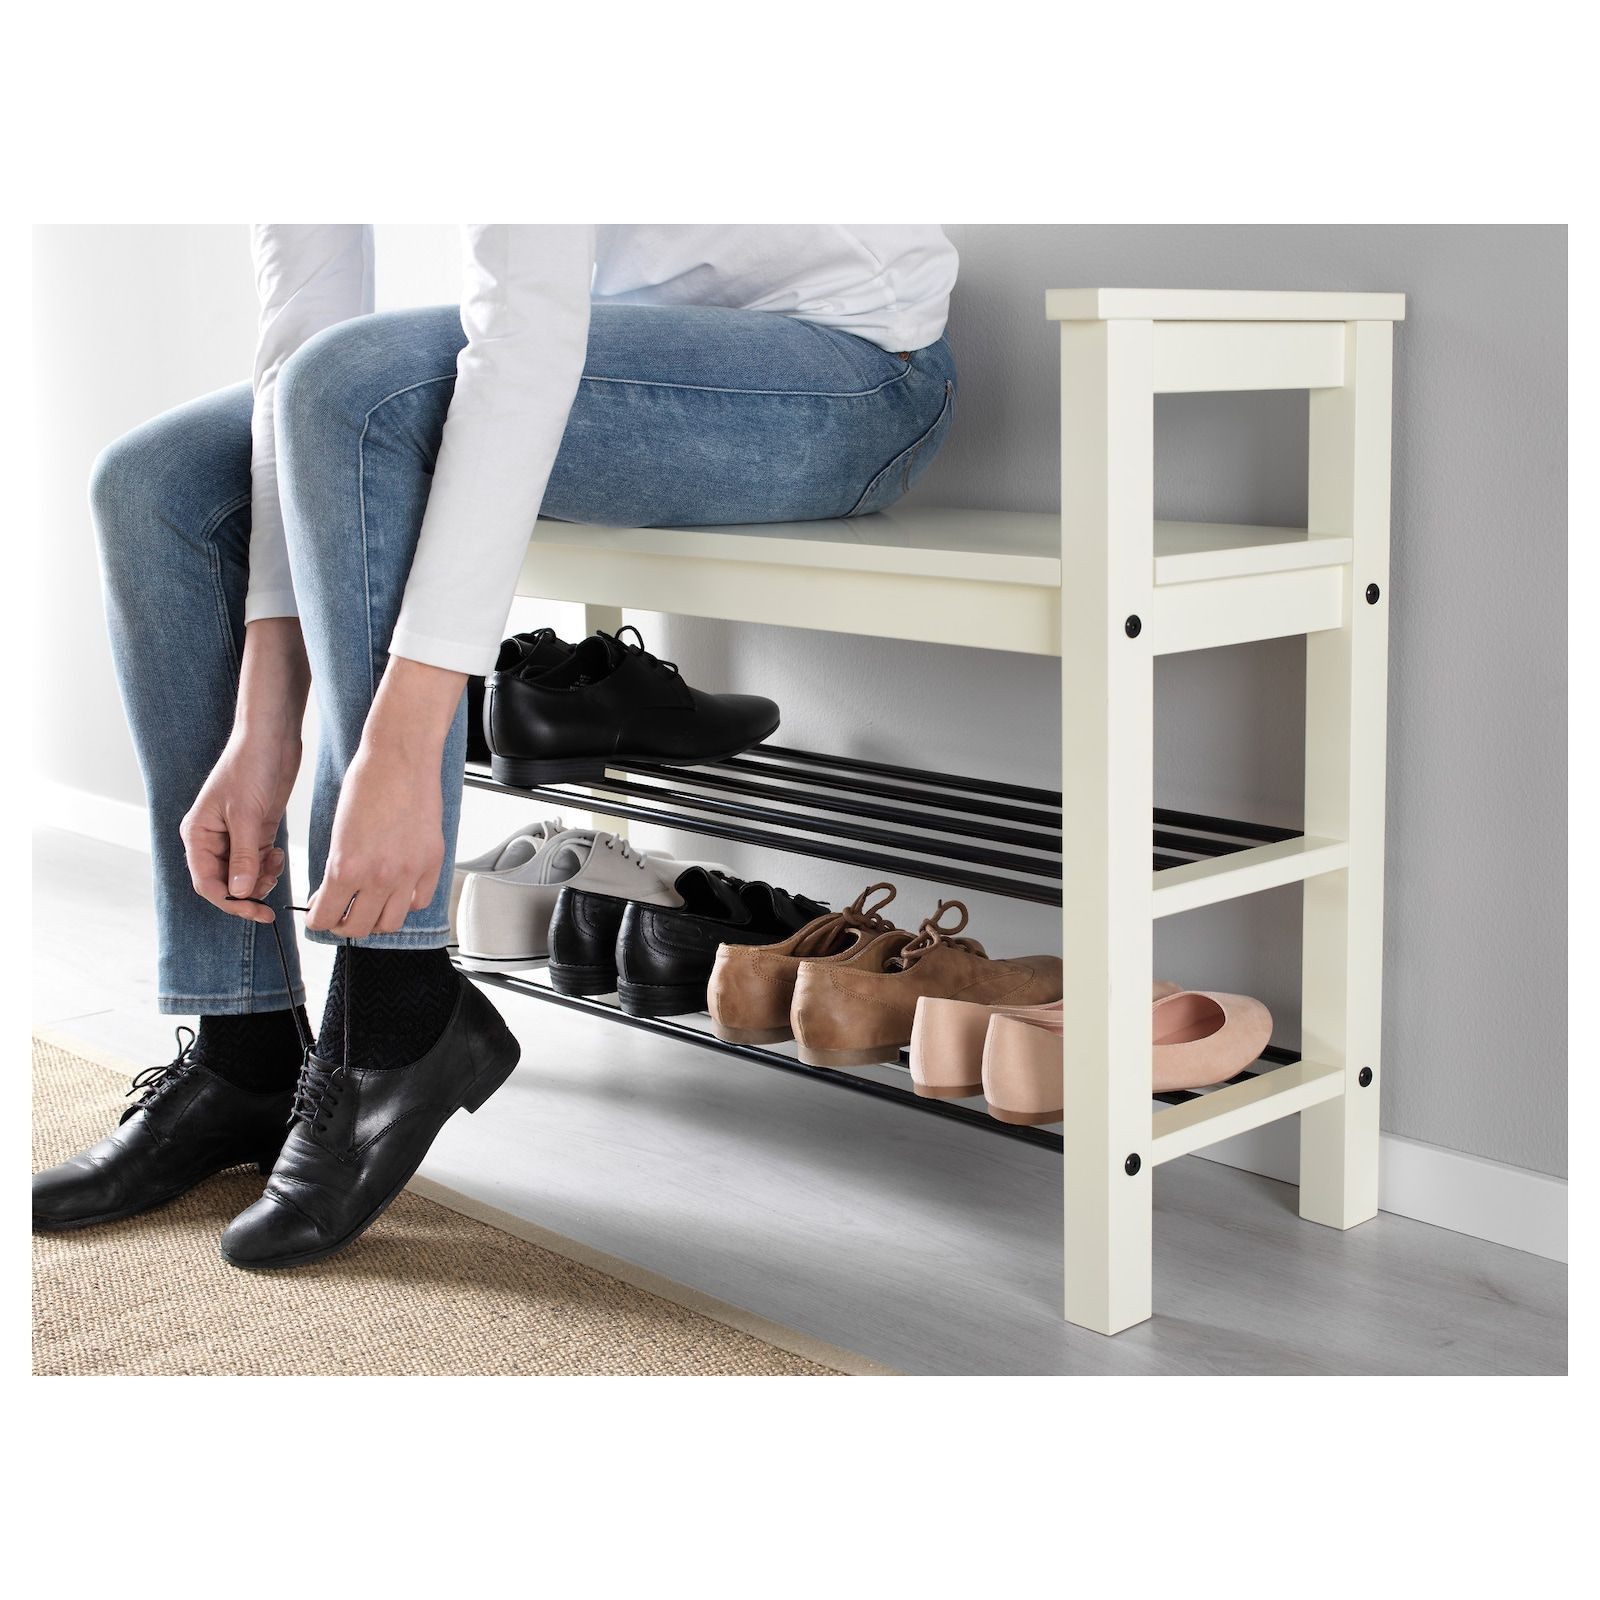 Hemnes Bench With Shoe Storage
 HEMNES Bench with shoe storage white 33 1 2x12 5 8